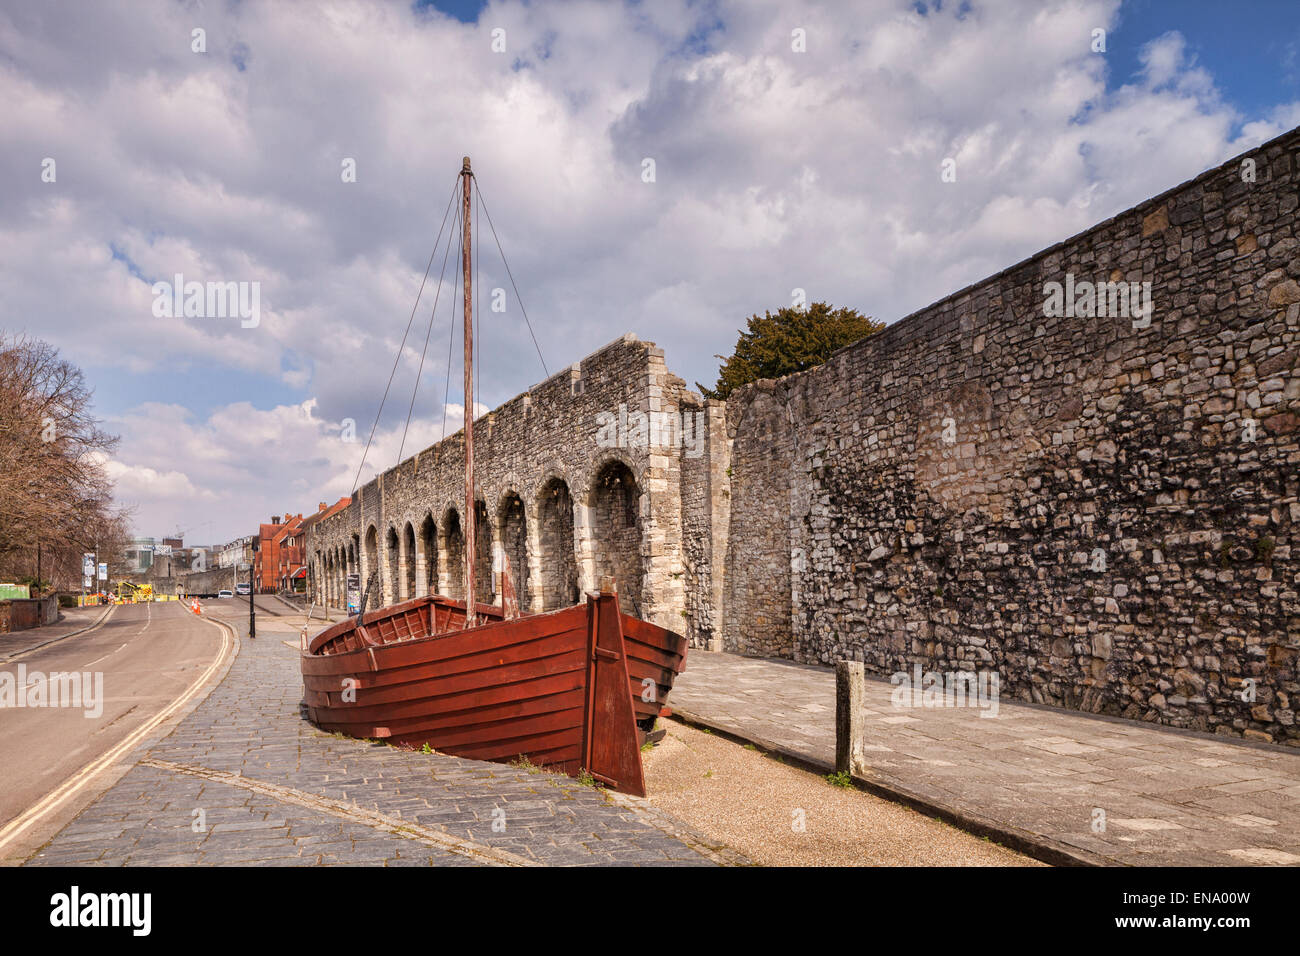 Una sezione delle mura della città vecchia di Southampton. Una barca è stato collocato per mostrare dove il mare era in epoca medievale. Southampton, Foto Stock